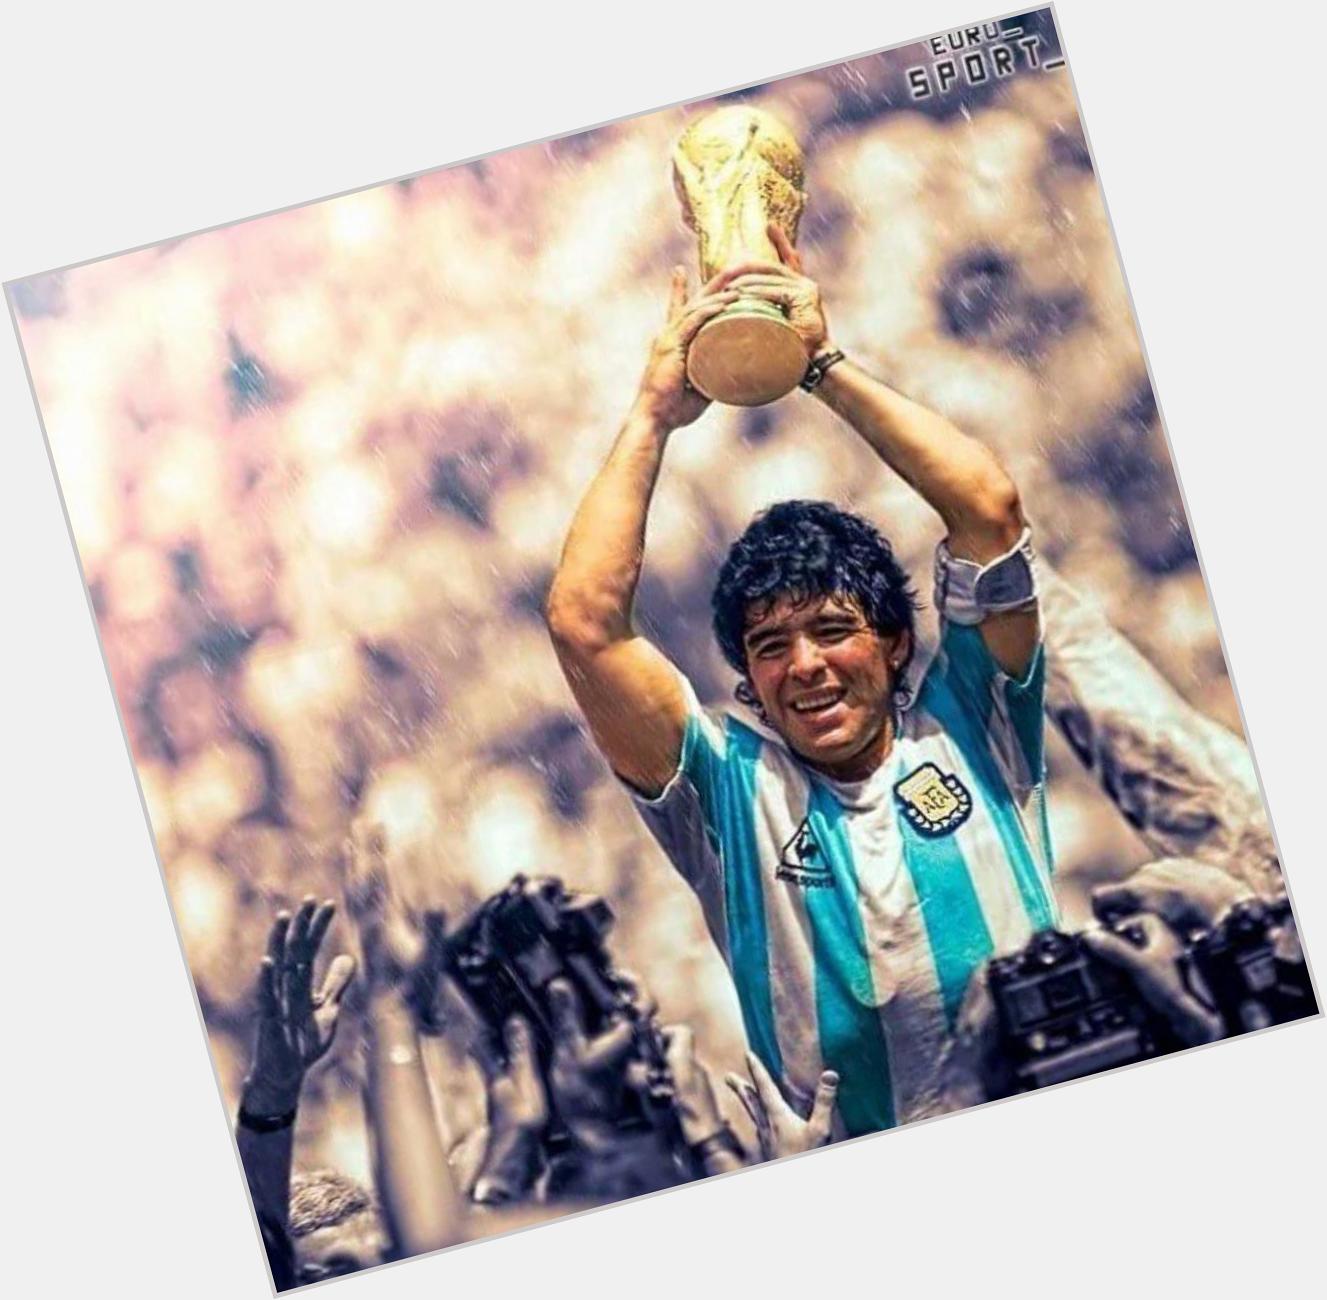 Happy birthday to the greatest of all time, D10S un ídolo Diego Armando Maradona el Pibe de Oro, te quiero Diego 